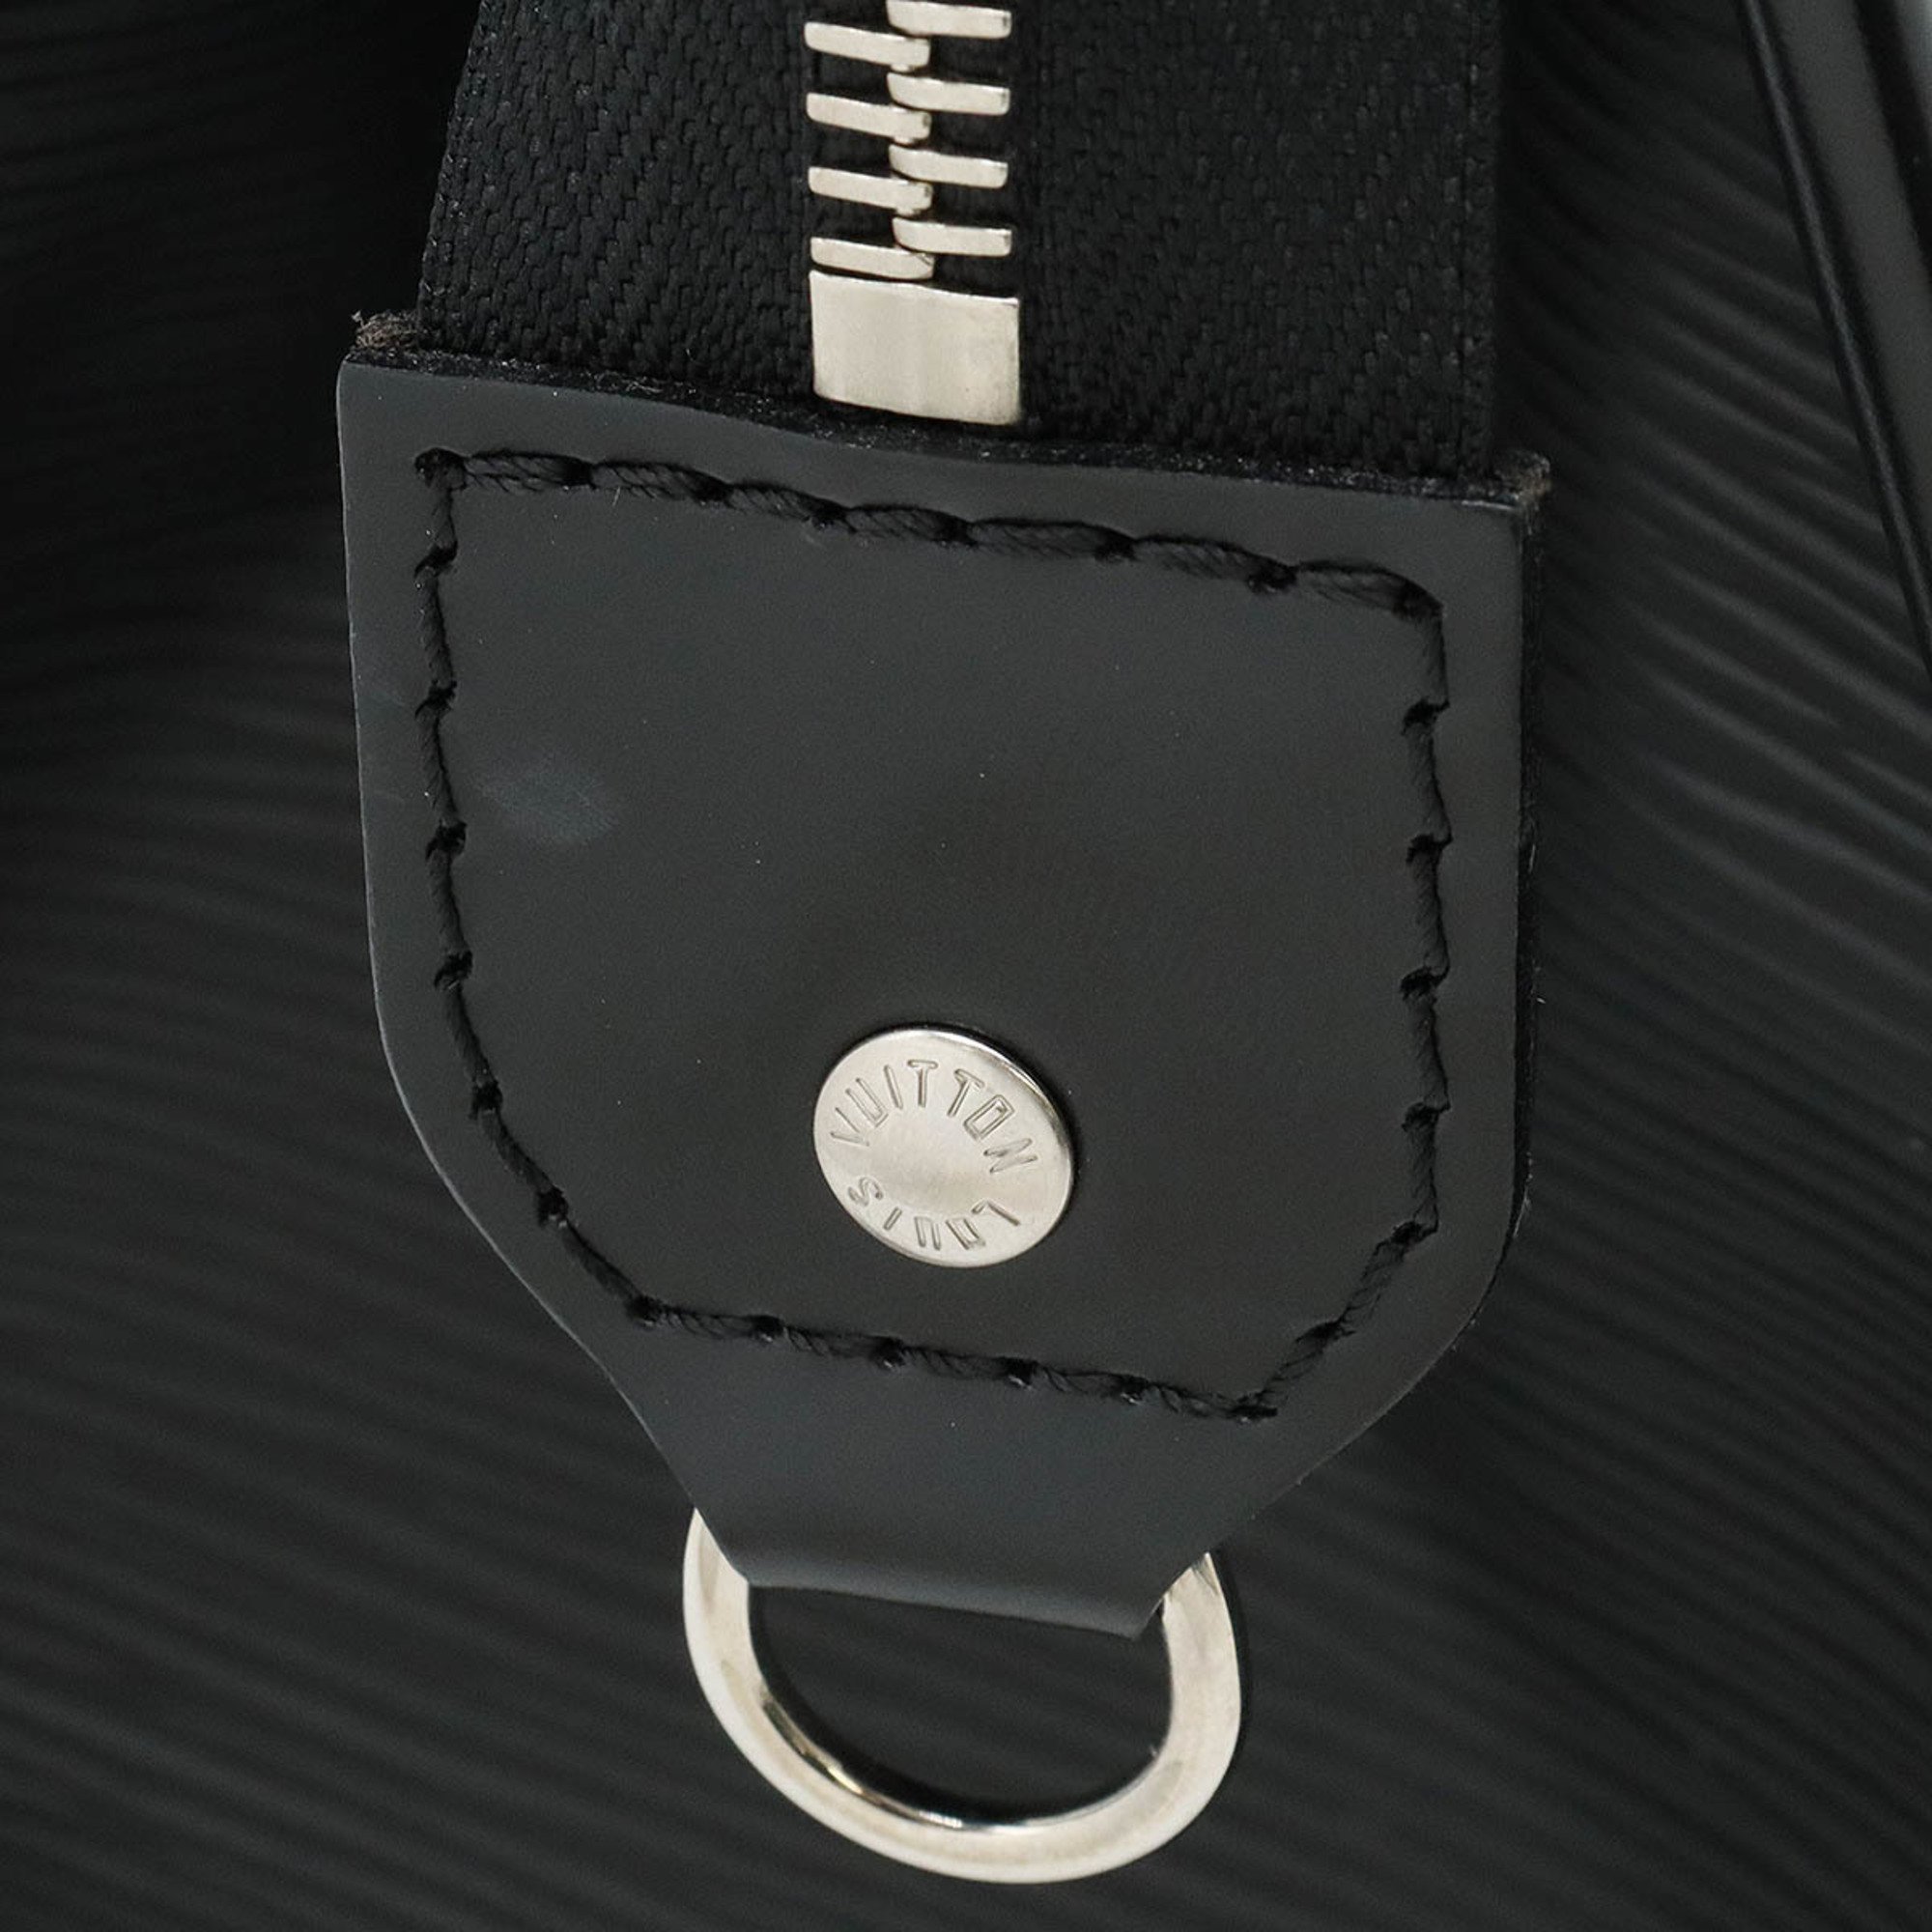 LOUIS VUITTON Louis Vuitton Epi Madeleine PM Shoulder Bag Handbag Noir Black M59332